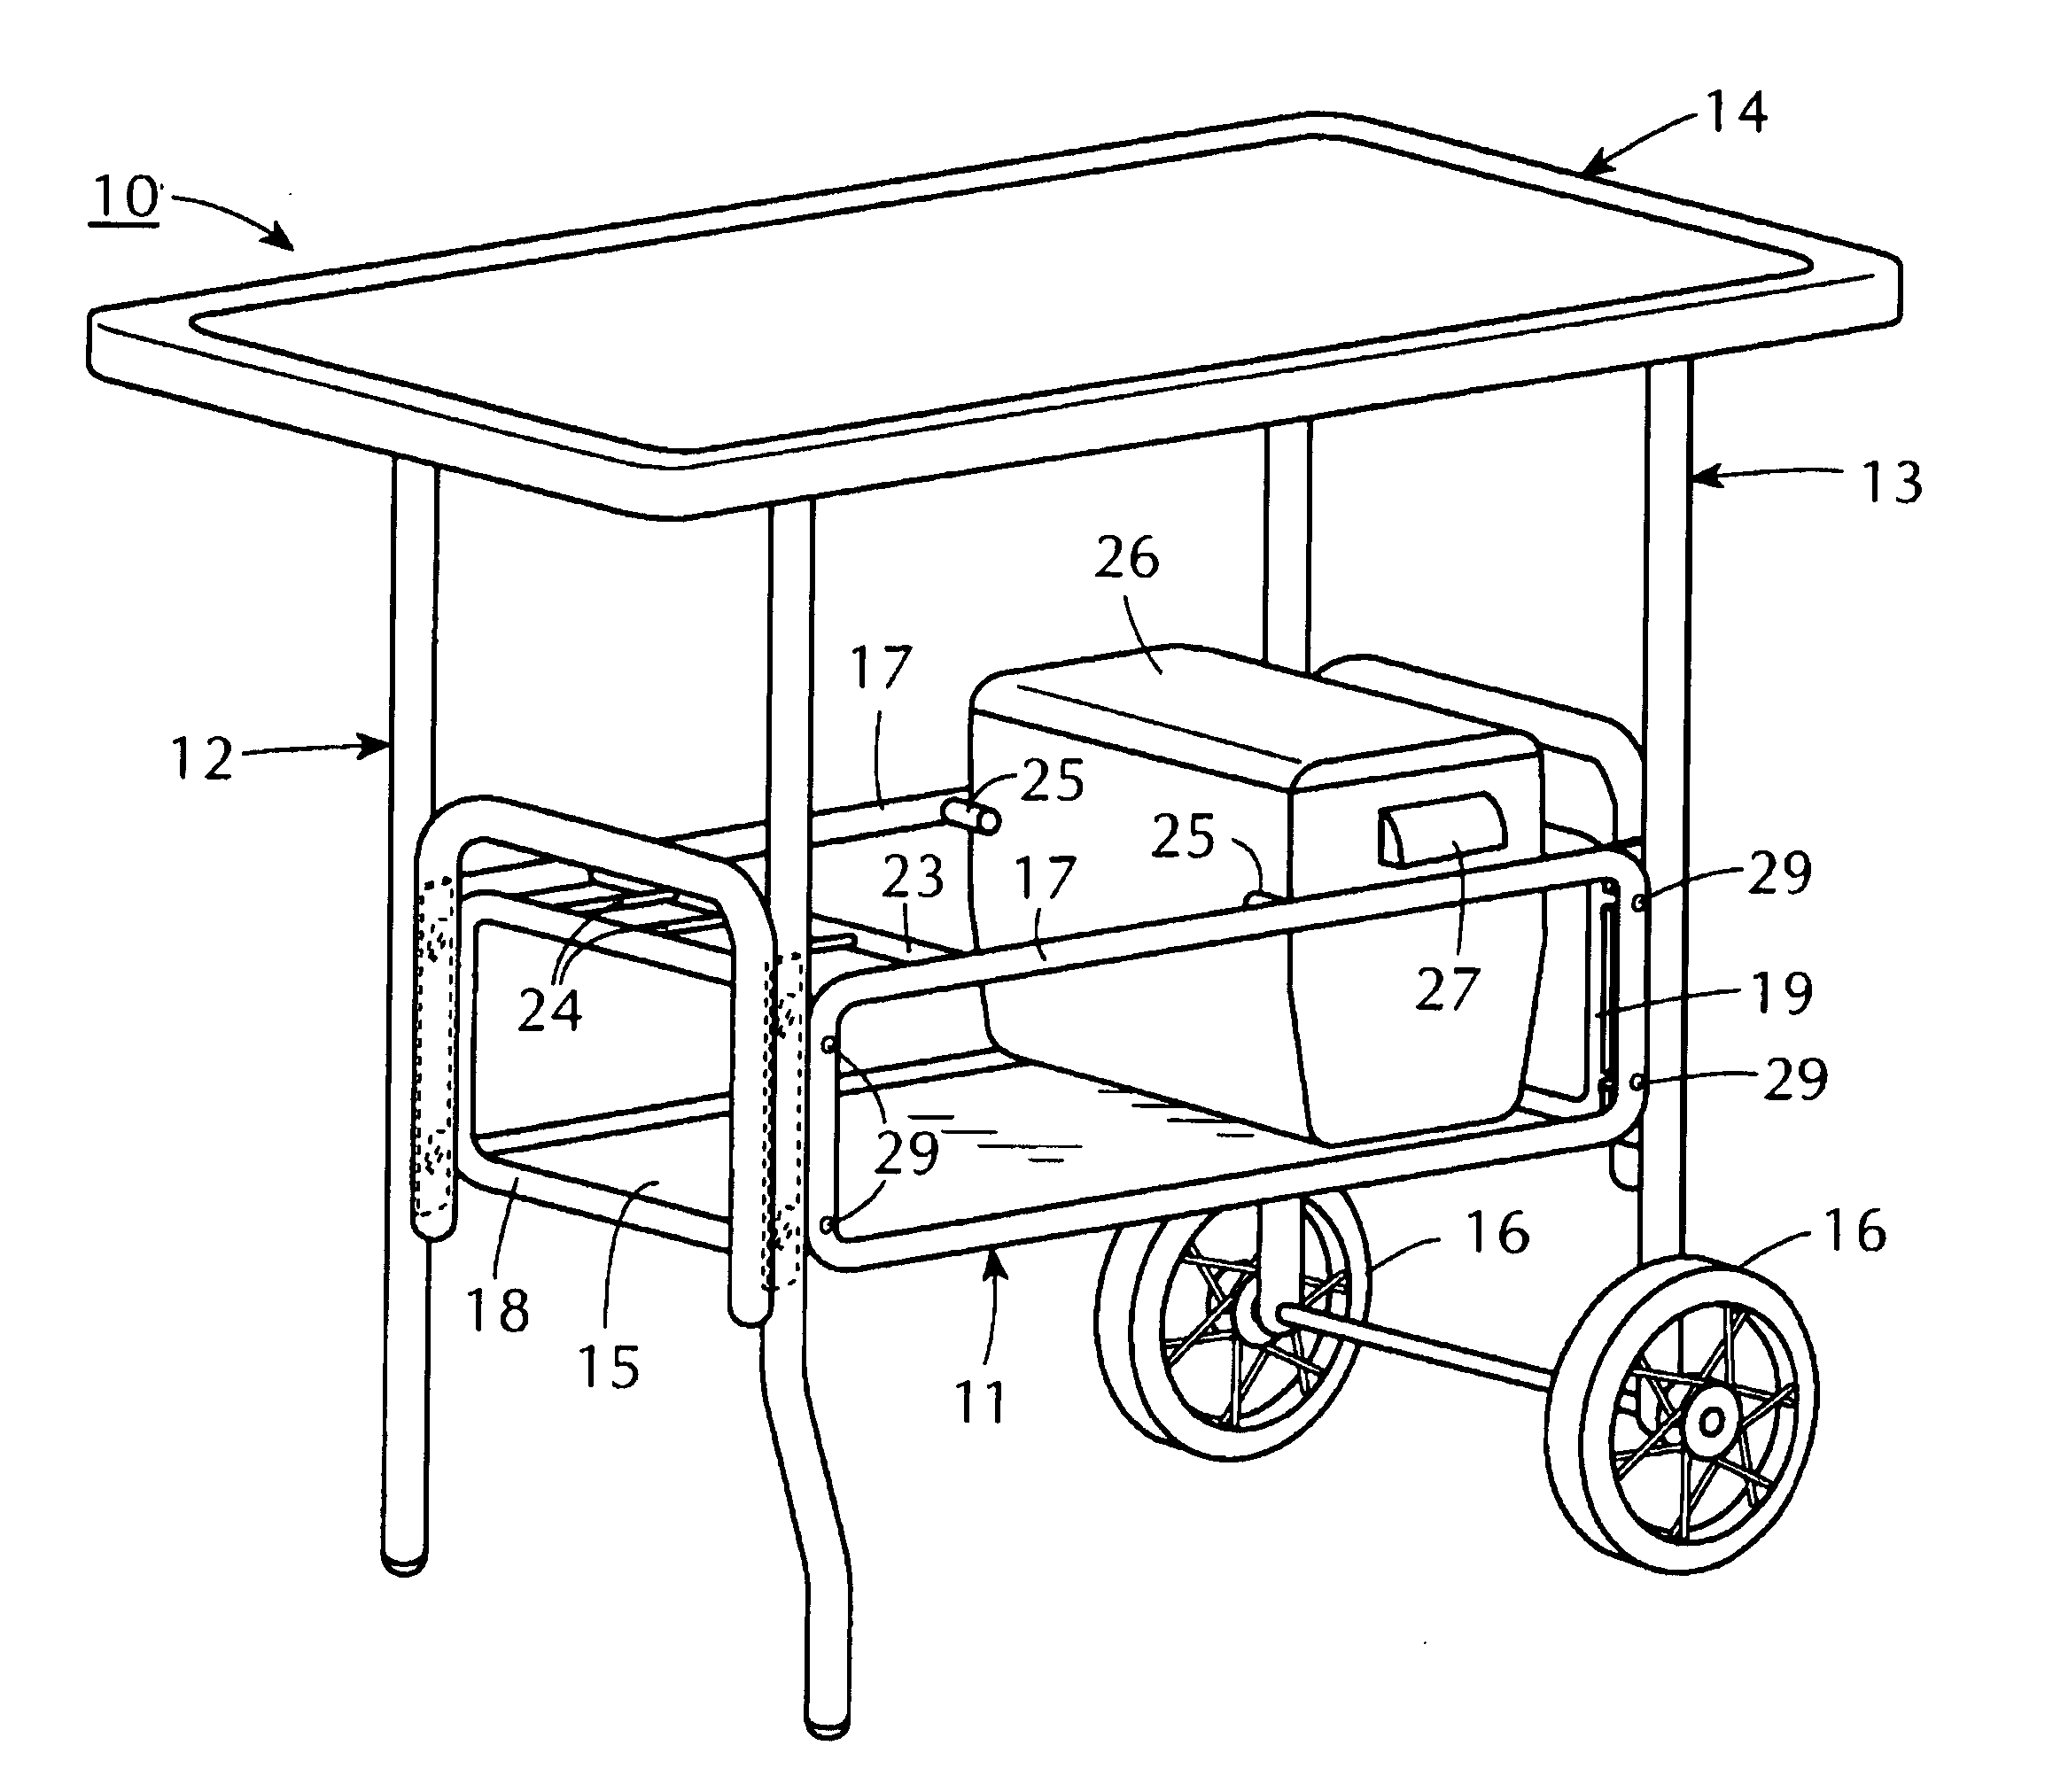 Bar cart